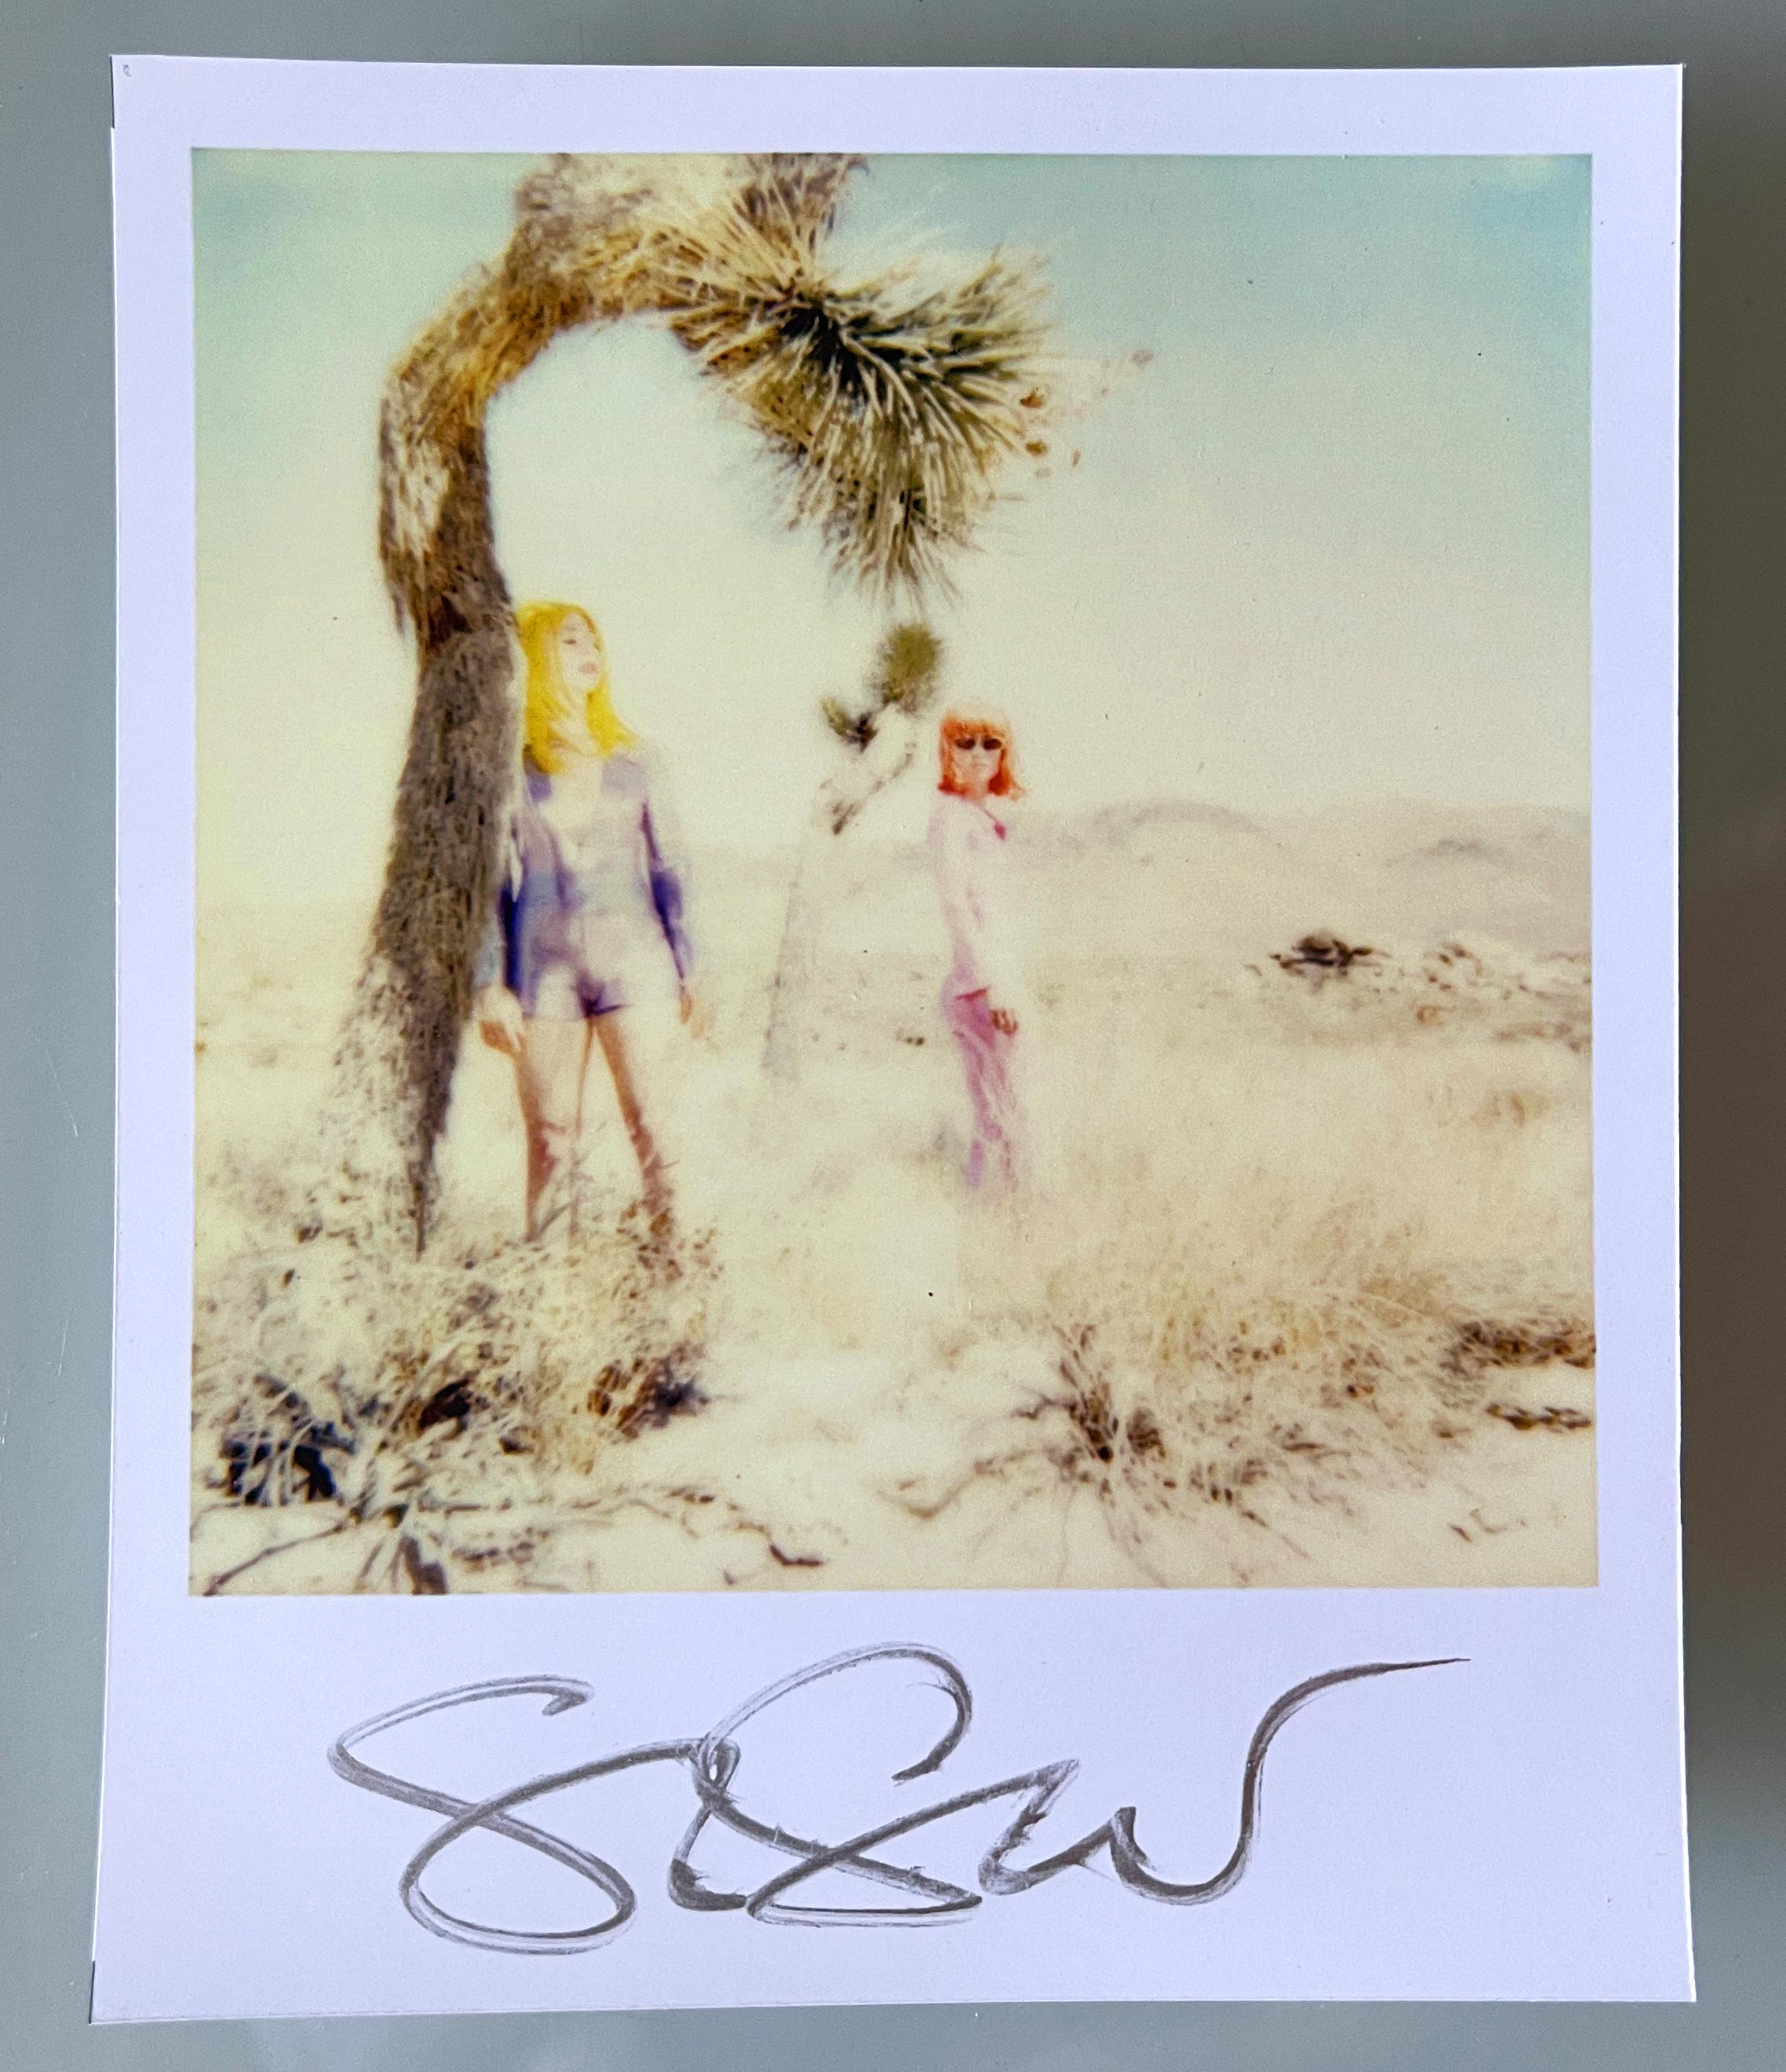 Stefanie Schneider Polaroidformat unbegrenzt Mini 'Long Way Home' - 1999 - 

vorne signiert, nicht montiert. 
1 Digitale Farbfotografien auf der Grundlage eines Polaroids. 

Offene Editionen in Polaroidgröße 1999-2016
10,7 x 8,8 cm (Bild 7,9 x 7,7